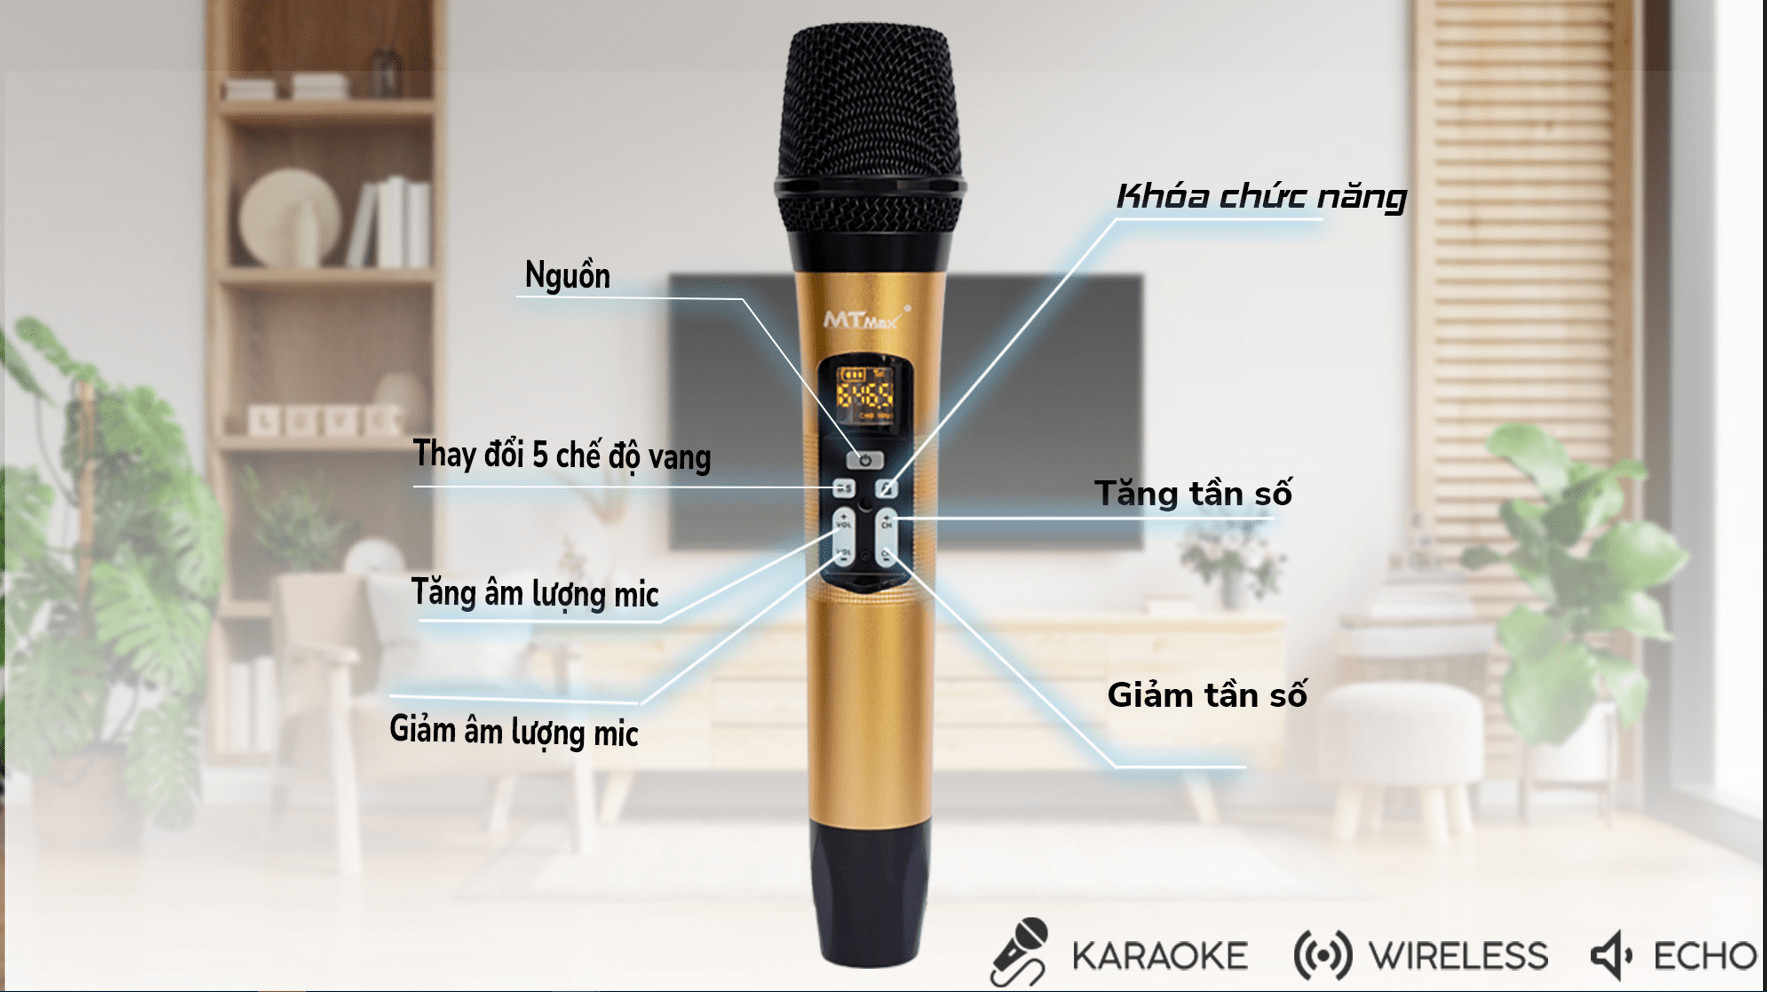 Siêu phẩm Micro không dây karaoke AK-86 kiểu dáng hiện đại chất lượng cao cấp. Hàng Chính Hãng